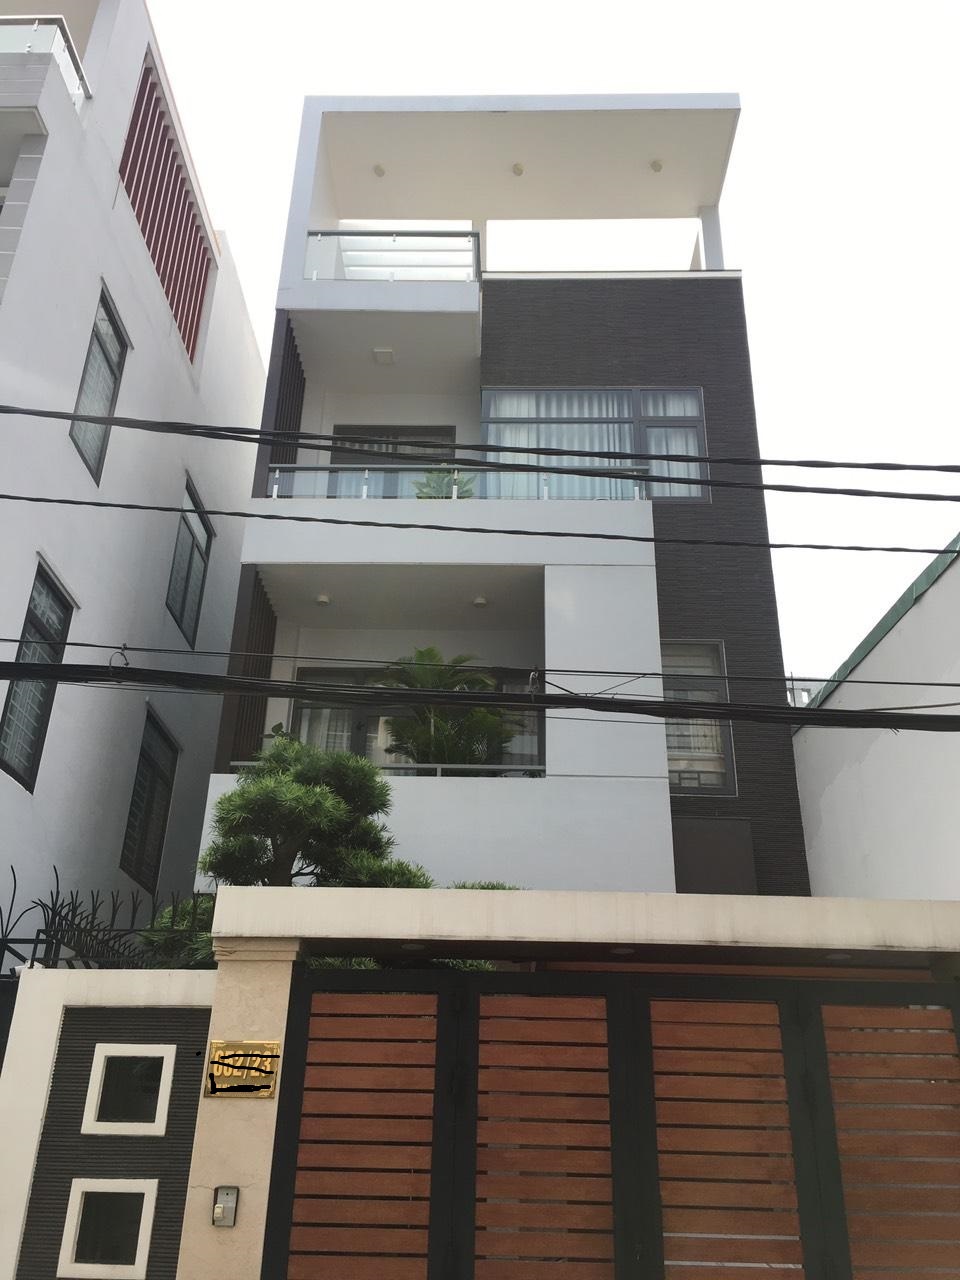 Bán nhà 3 tầng 2 mặt tiền kinh doanh đường 3/2 , phường Thuận Phước, quận Hải Châu, Đà Nẵng.